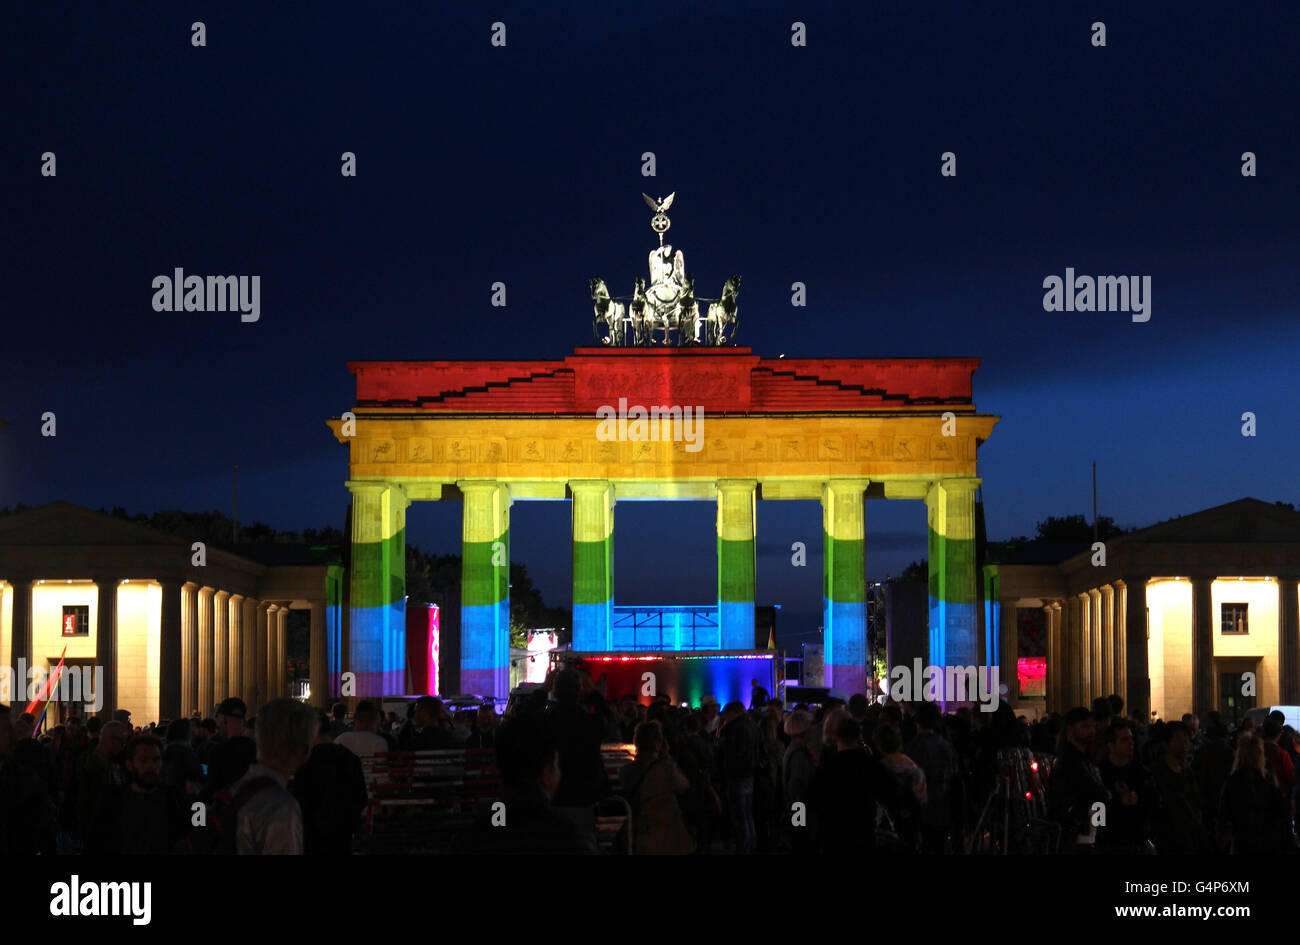 Berlino, Germania. Il 18 giugno, 2016. Molte persone prendono parte a questa veglia " Berlino per Orlando" presso la Porta di Brandeburgo (che è stata accesa in arcobaleno di colori) per commemorare il 49 vittime del tiro di Orlando a Berlino (Germania), 18 giugno 2016. Foto: Joerg Carstensen/dpa/Alamy Live News Foto Stock